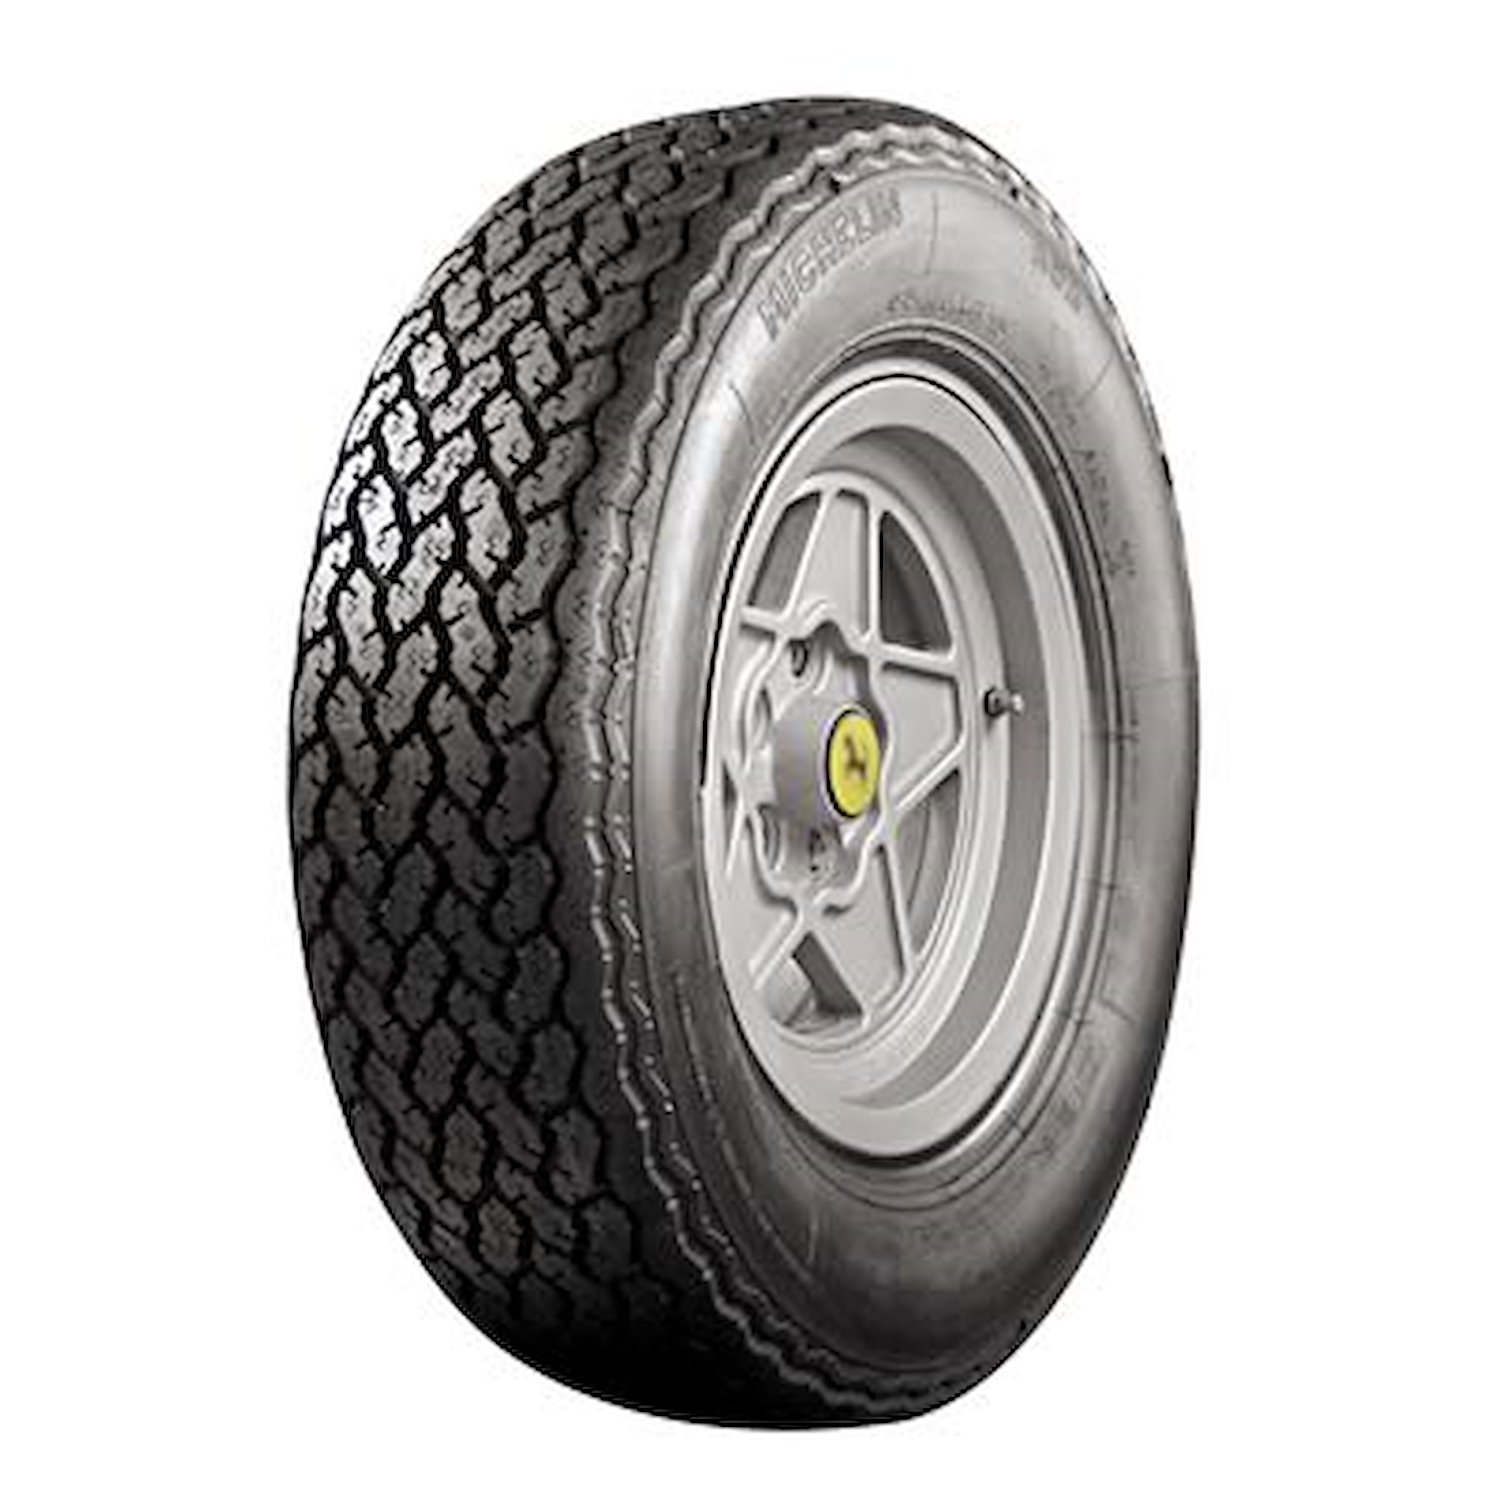 555773 Tire, Michelin XWX, 215/70VR14 92W